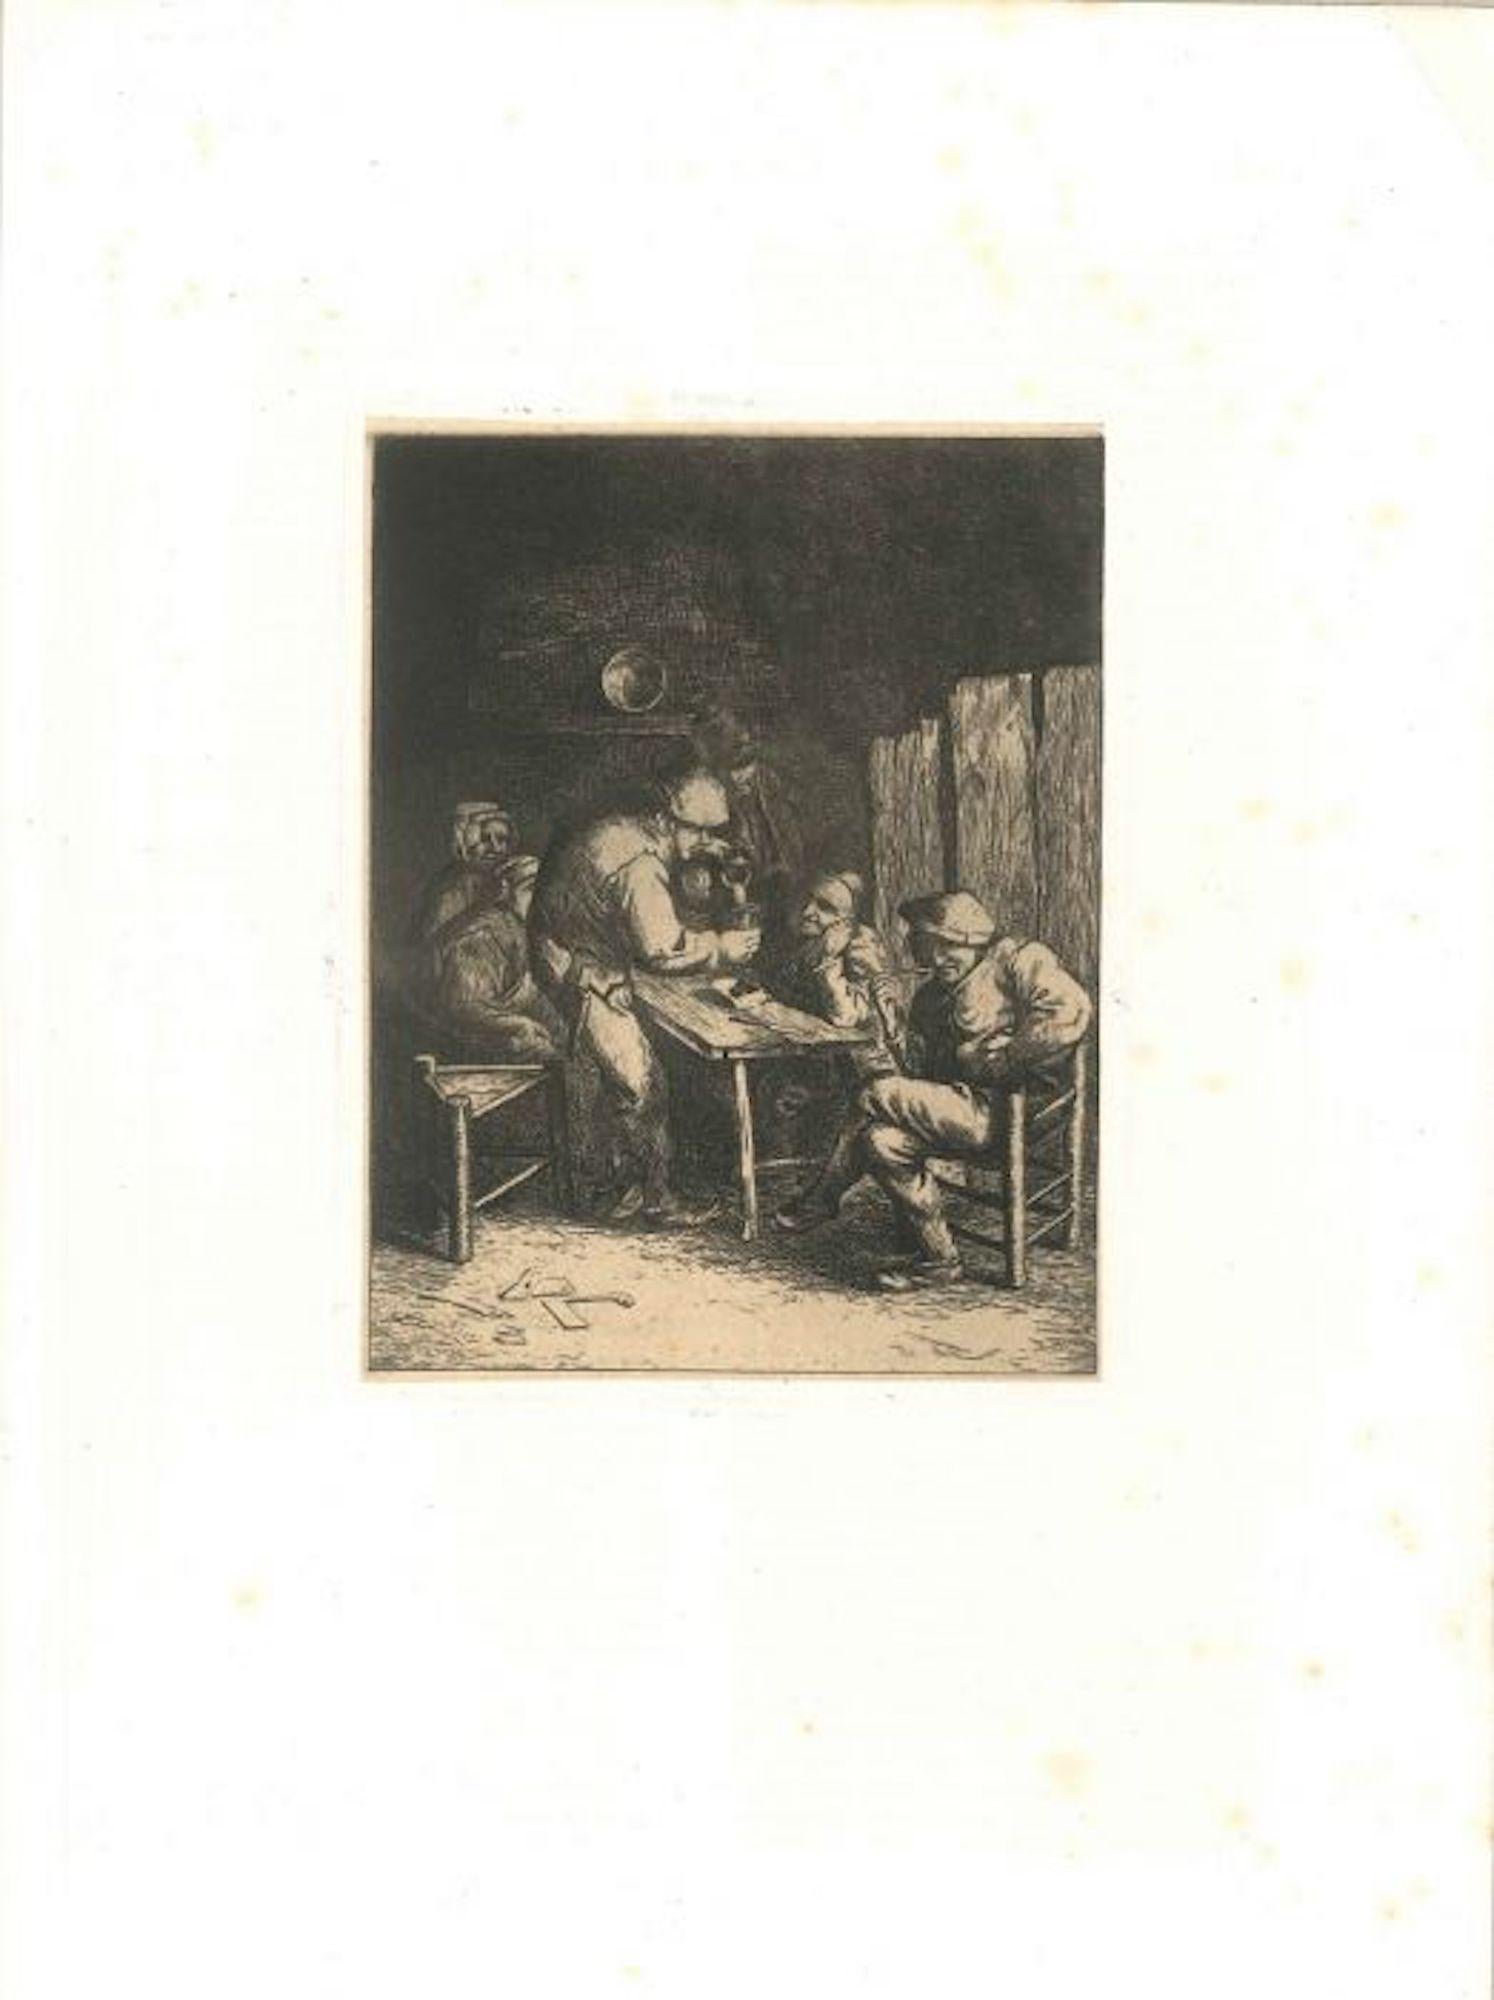 Scène de Bistrot - Artiste inconnu d'après Adrian Van Ostade - 18e siècle - Print de Unknown